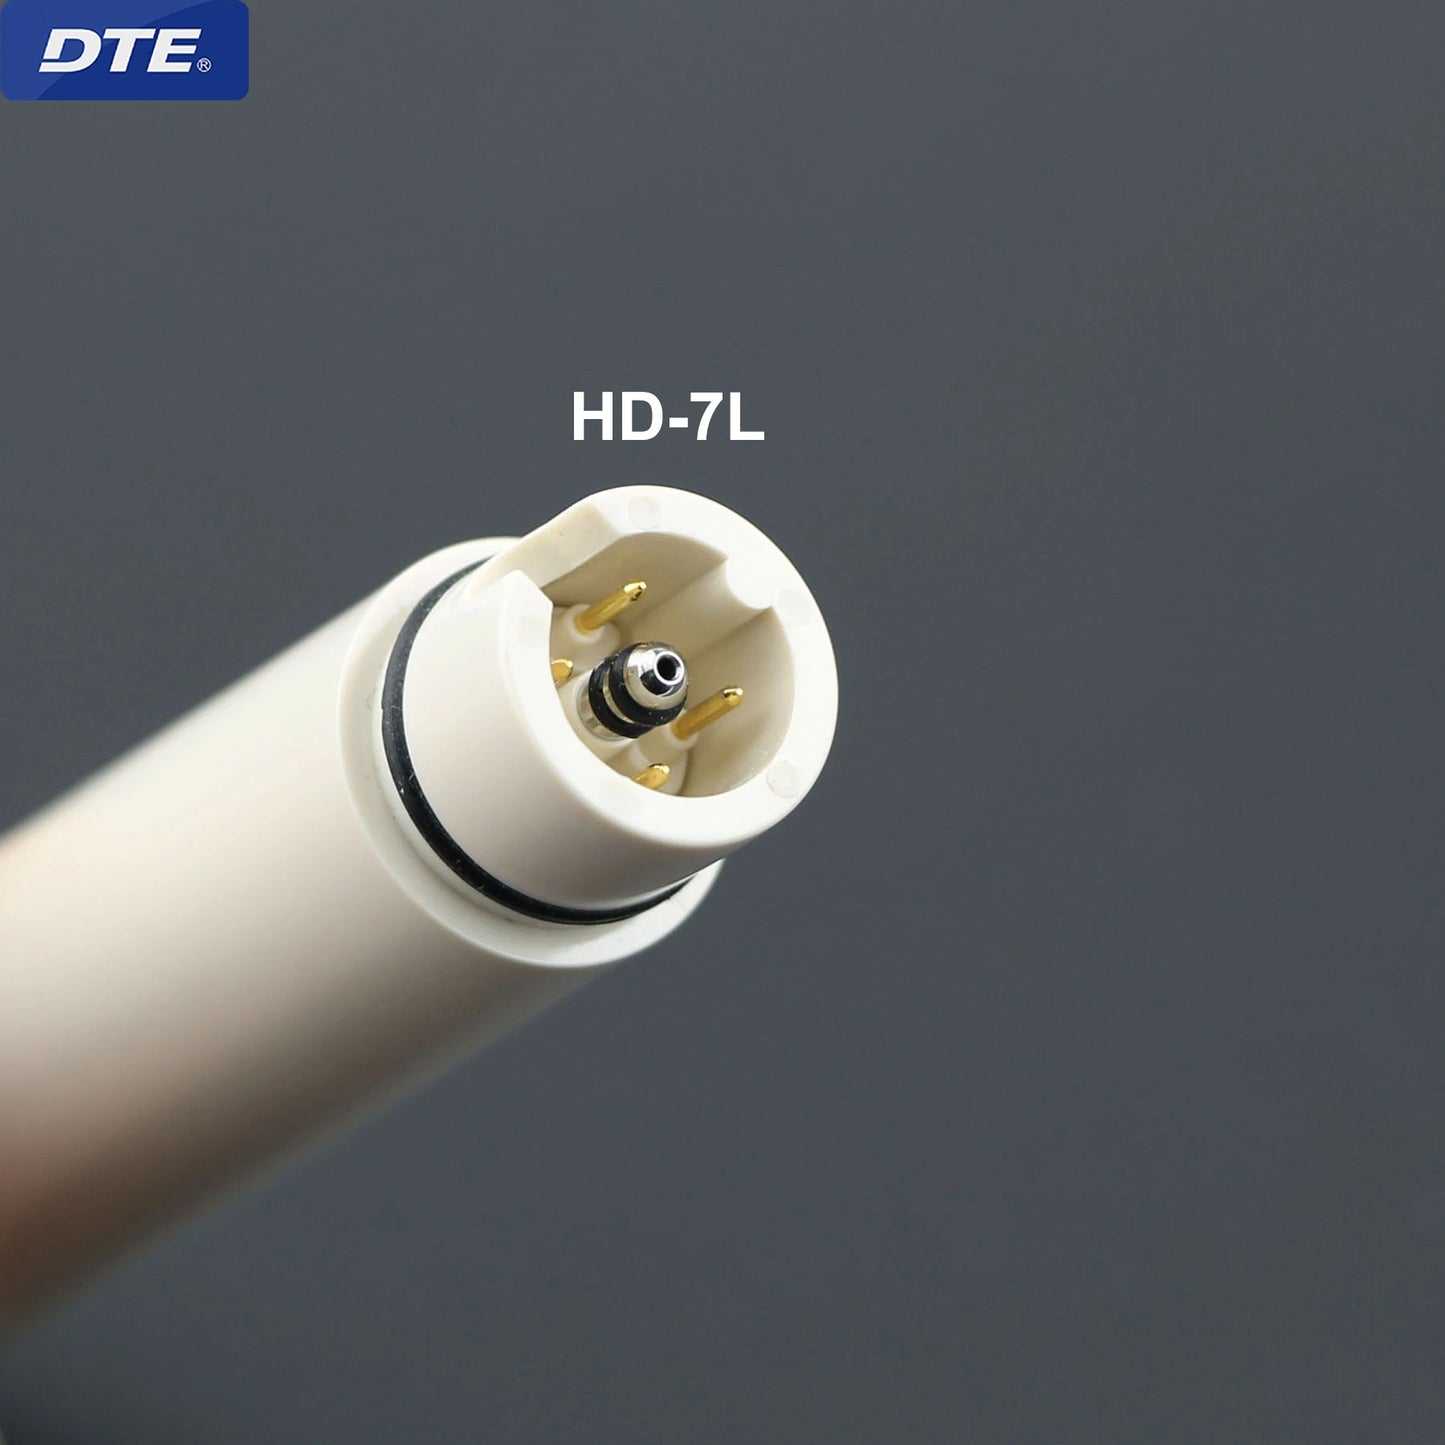 Woodpecker Dental Ultrasonic Scaler (HW-5L/ DTE HD-7L)